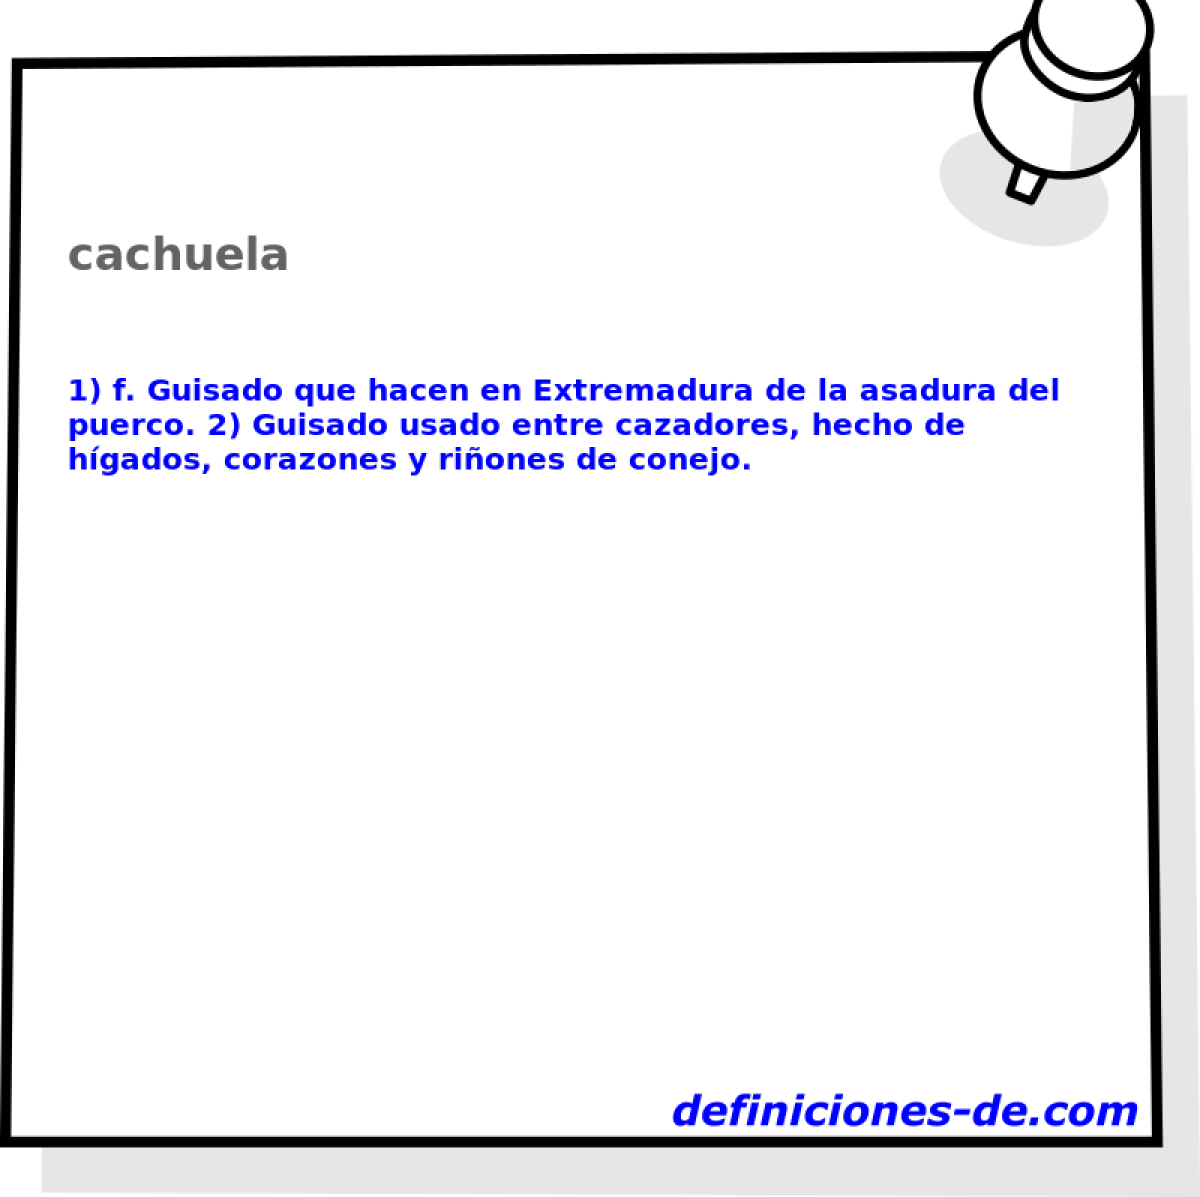 cachuela 